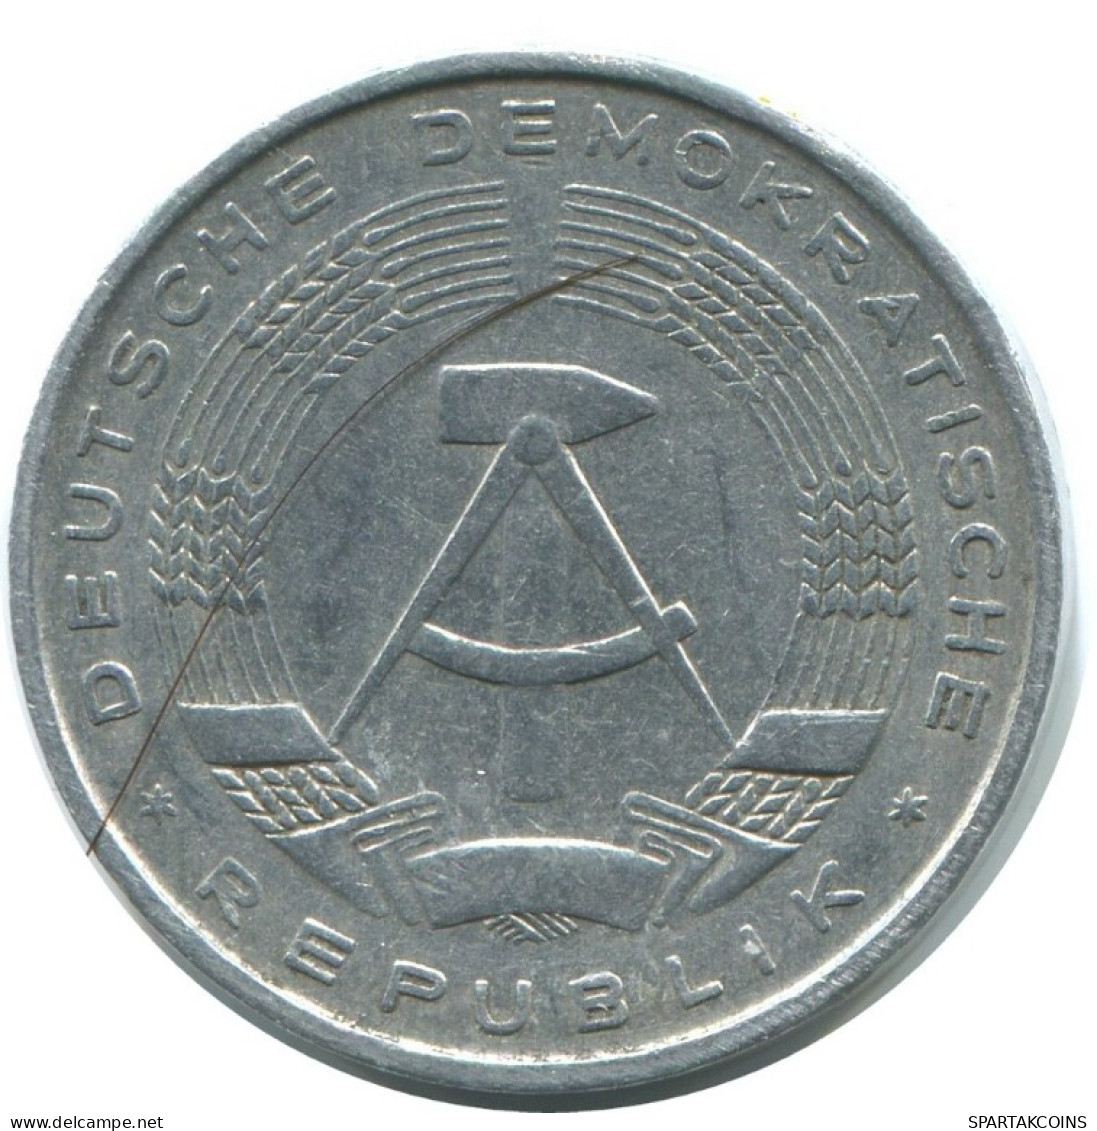 10 PFENNIG 1965 A DDR EAST ALEMANIA Moneda GERMANY #AE102.E.A - 10 Pfennig